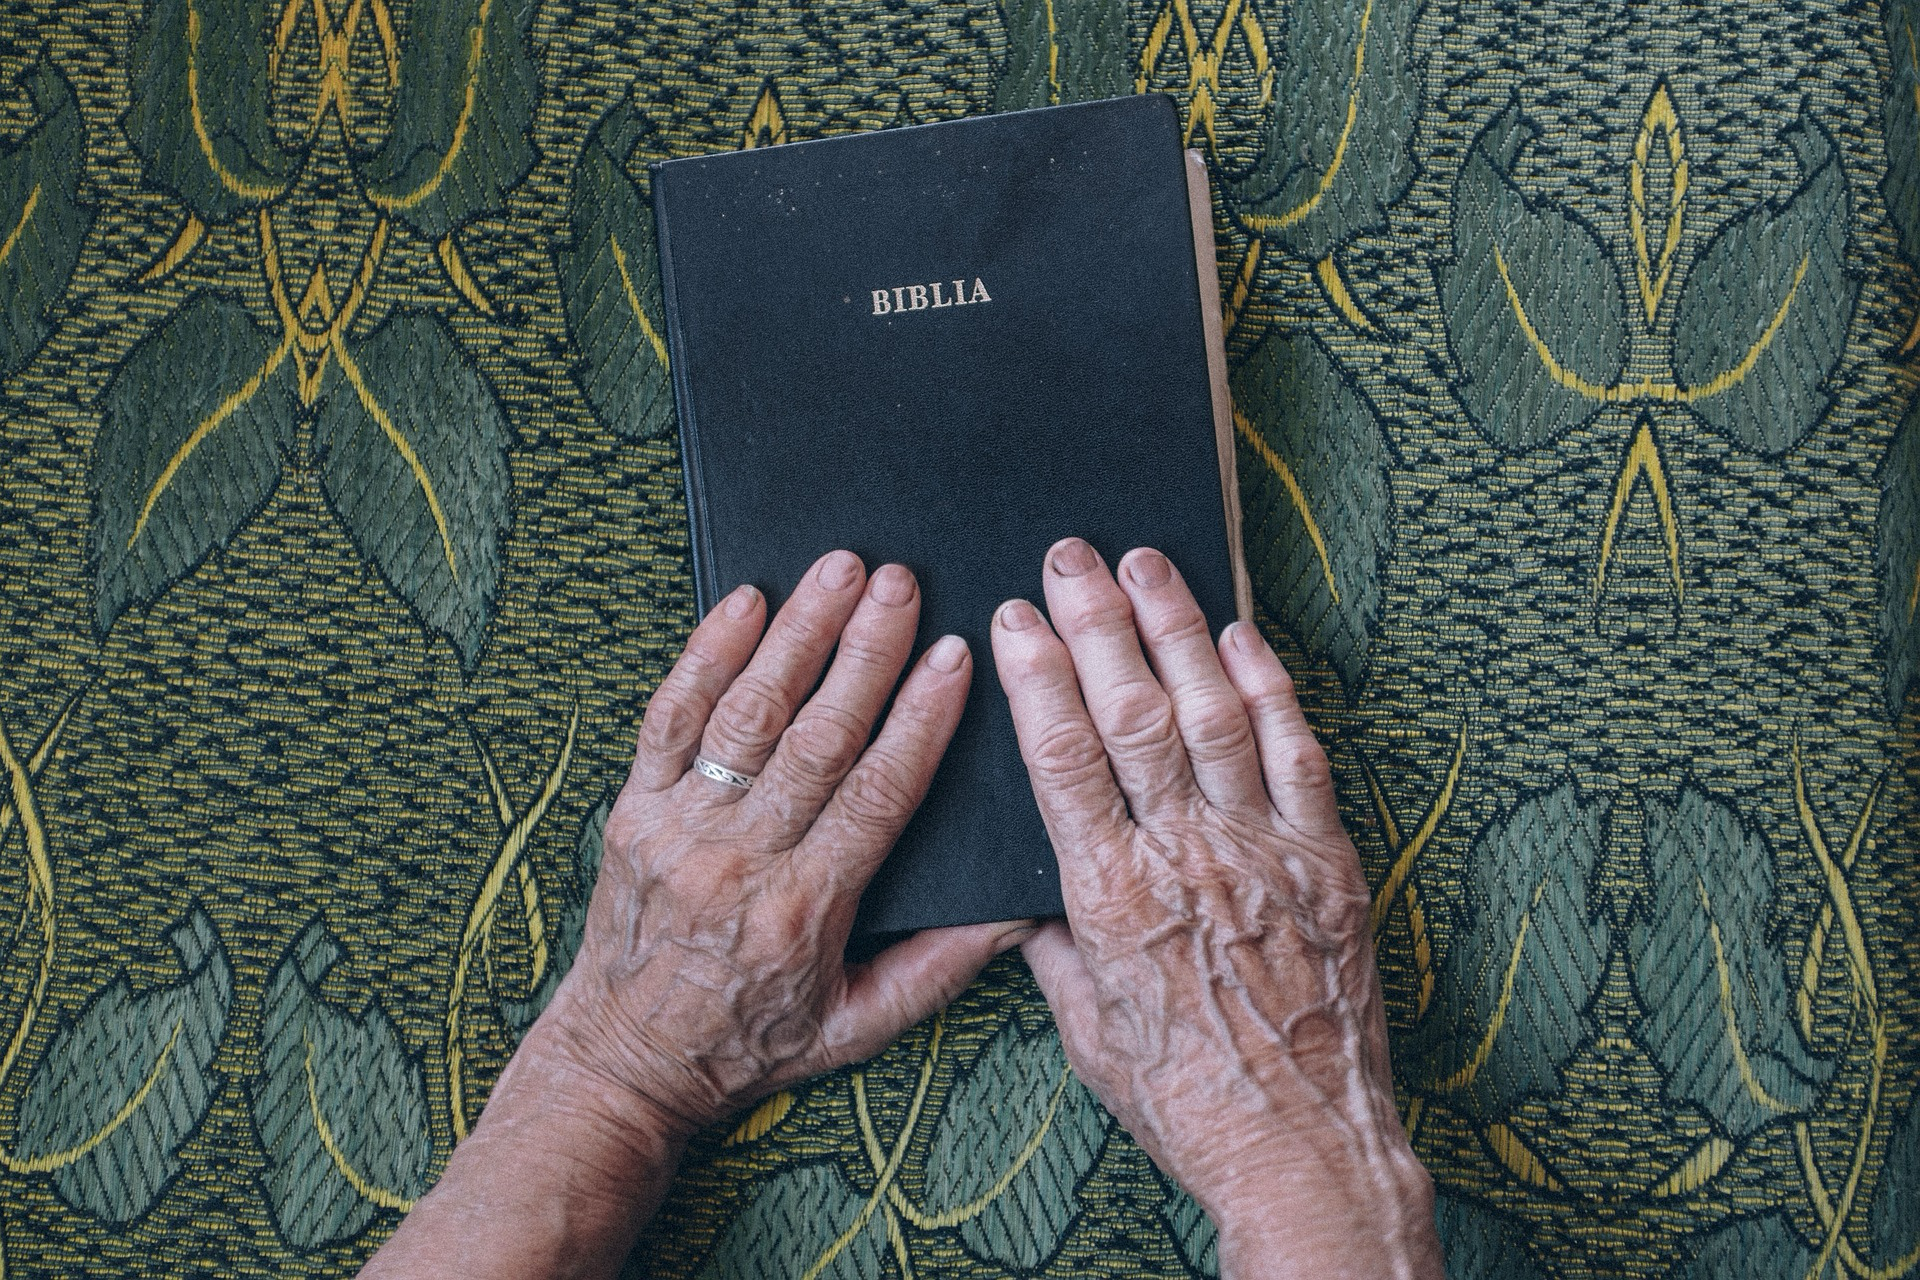 Auf dem Bild ist ein geschlossenes Buch mit dem Titel BIBLIA zu sehen. Es liegt auf einem Stoff mit einem Muster aus grünen Blättern und gelben Linien. Zwei Hände mit sichtbaren Alterszeichen und einem Ehering an der linken Hand ruhen auf dem Buch.